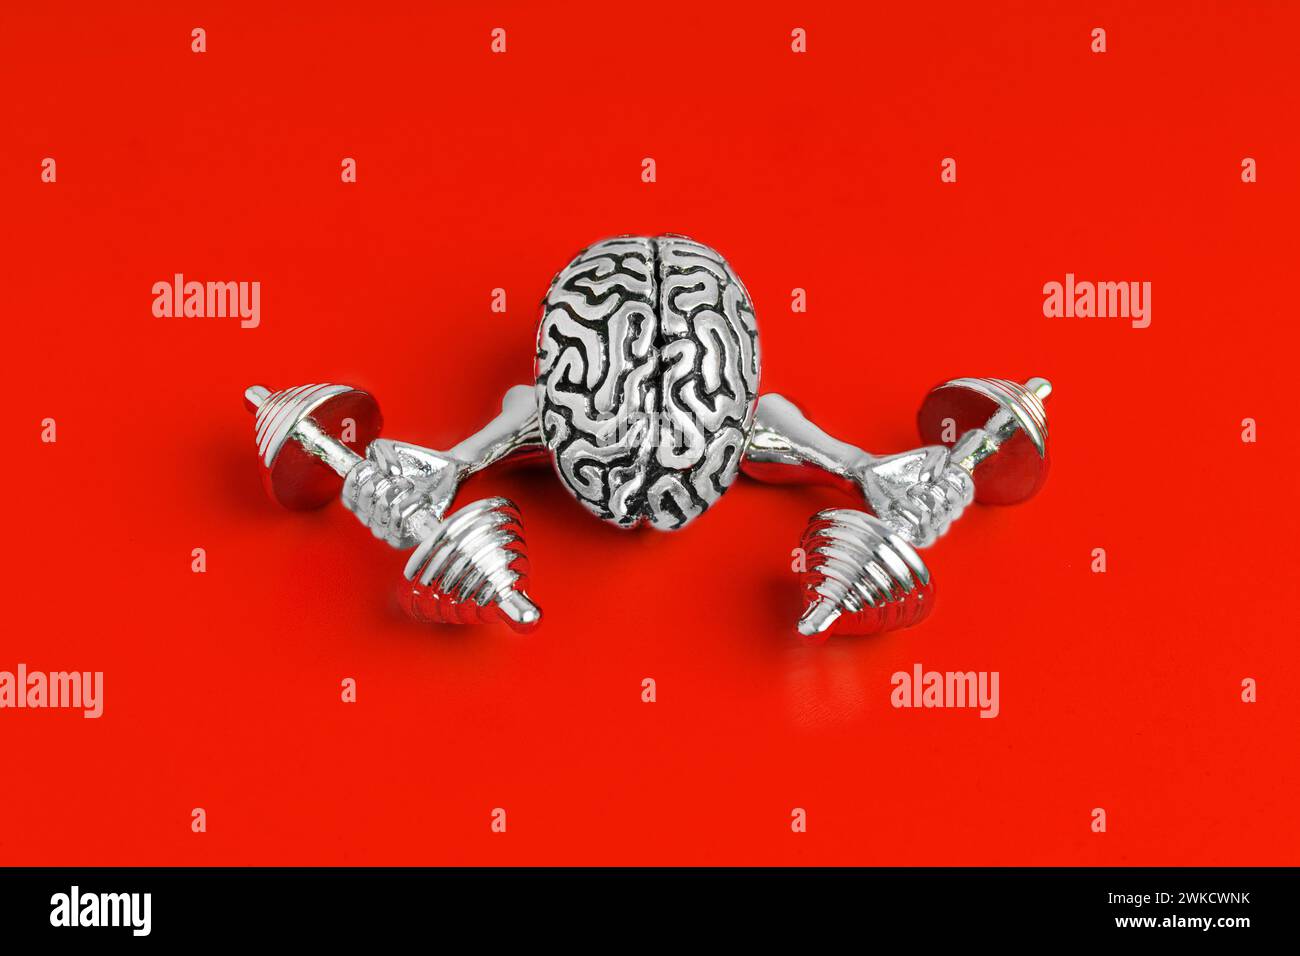 Brillante modello d'acciaio del cervello umano che flette i suoi muscoli cognitivi isolati su sfondo rosso. Foto Stock